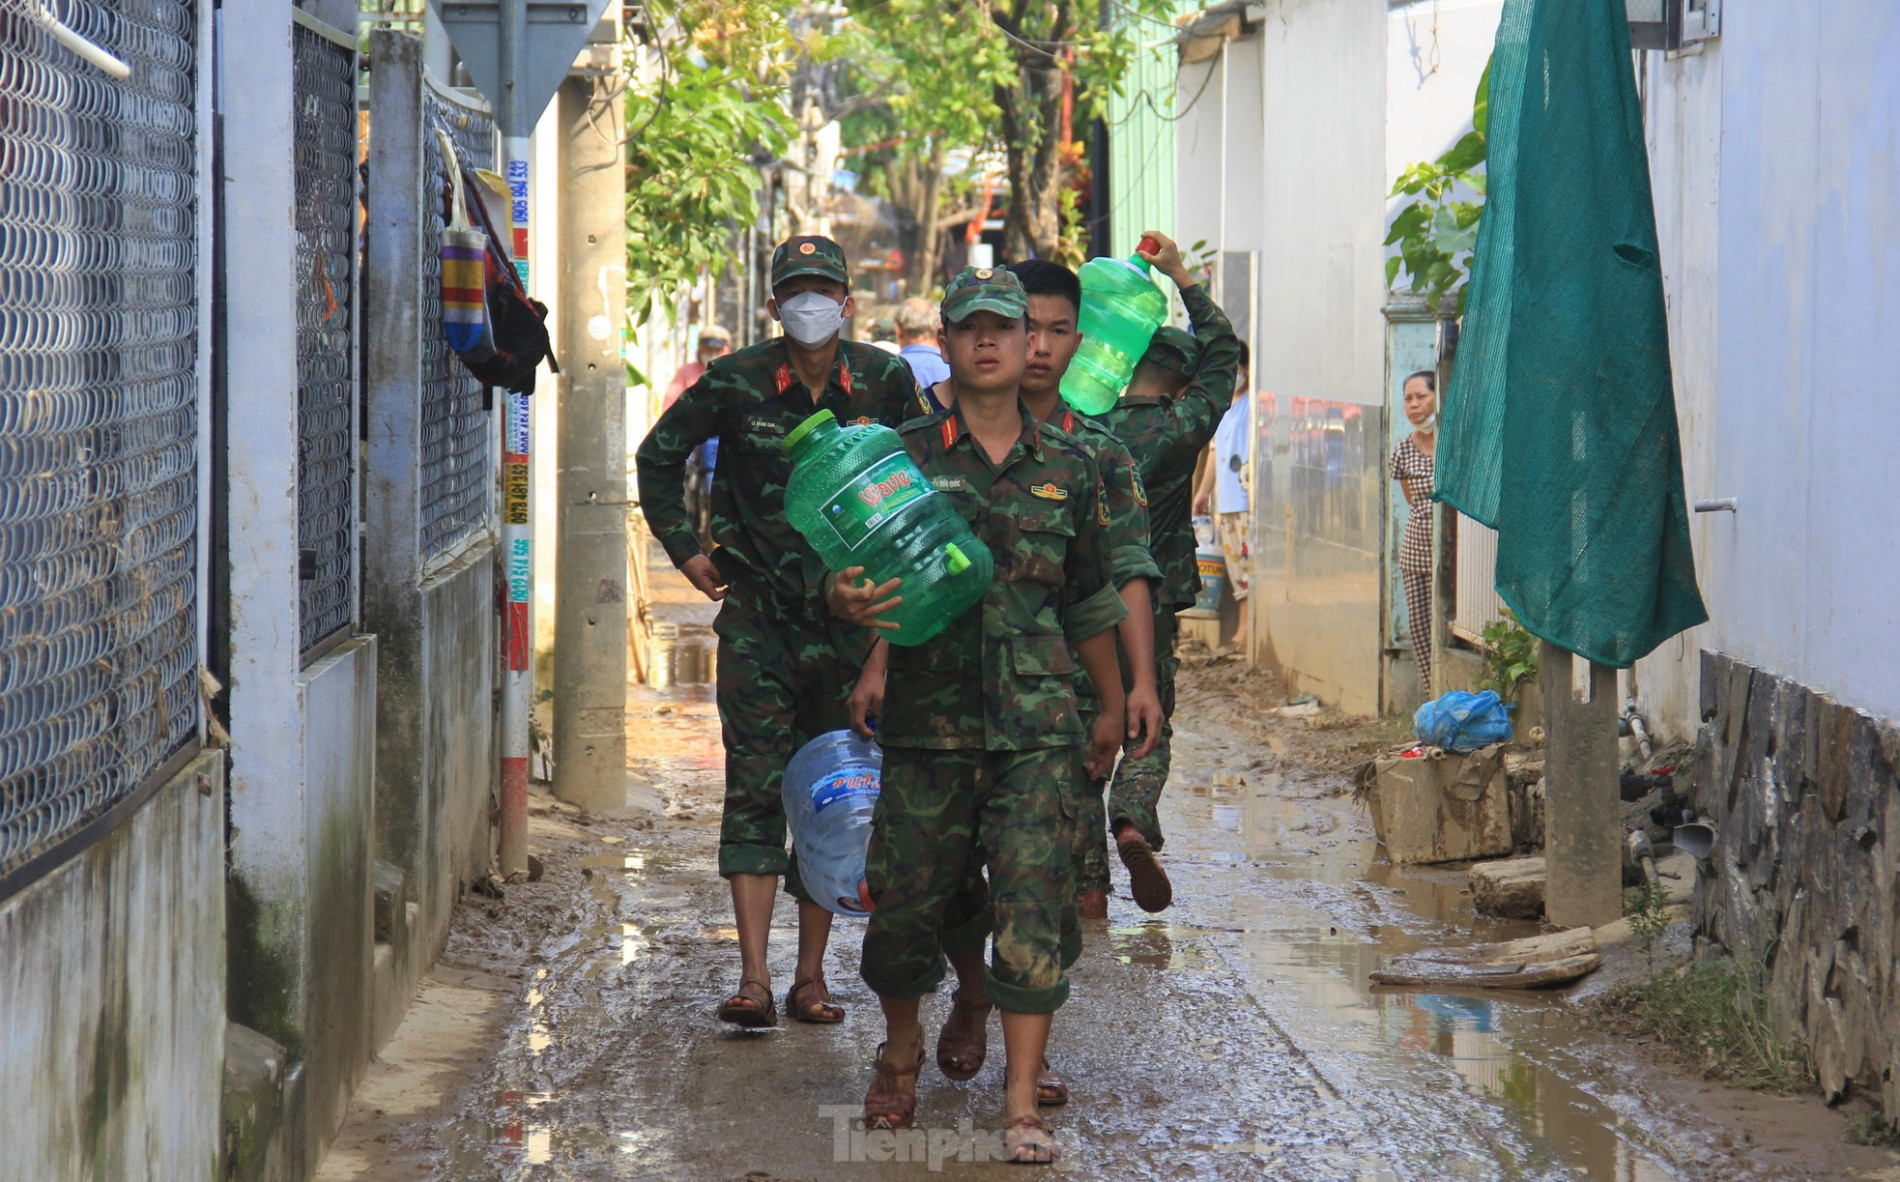 Bộ đội cõng nước sạch cho dân vùng ngập sau nhiều ngày khát khô ảnh 12